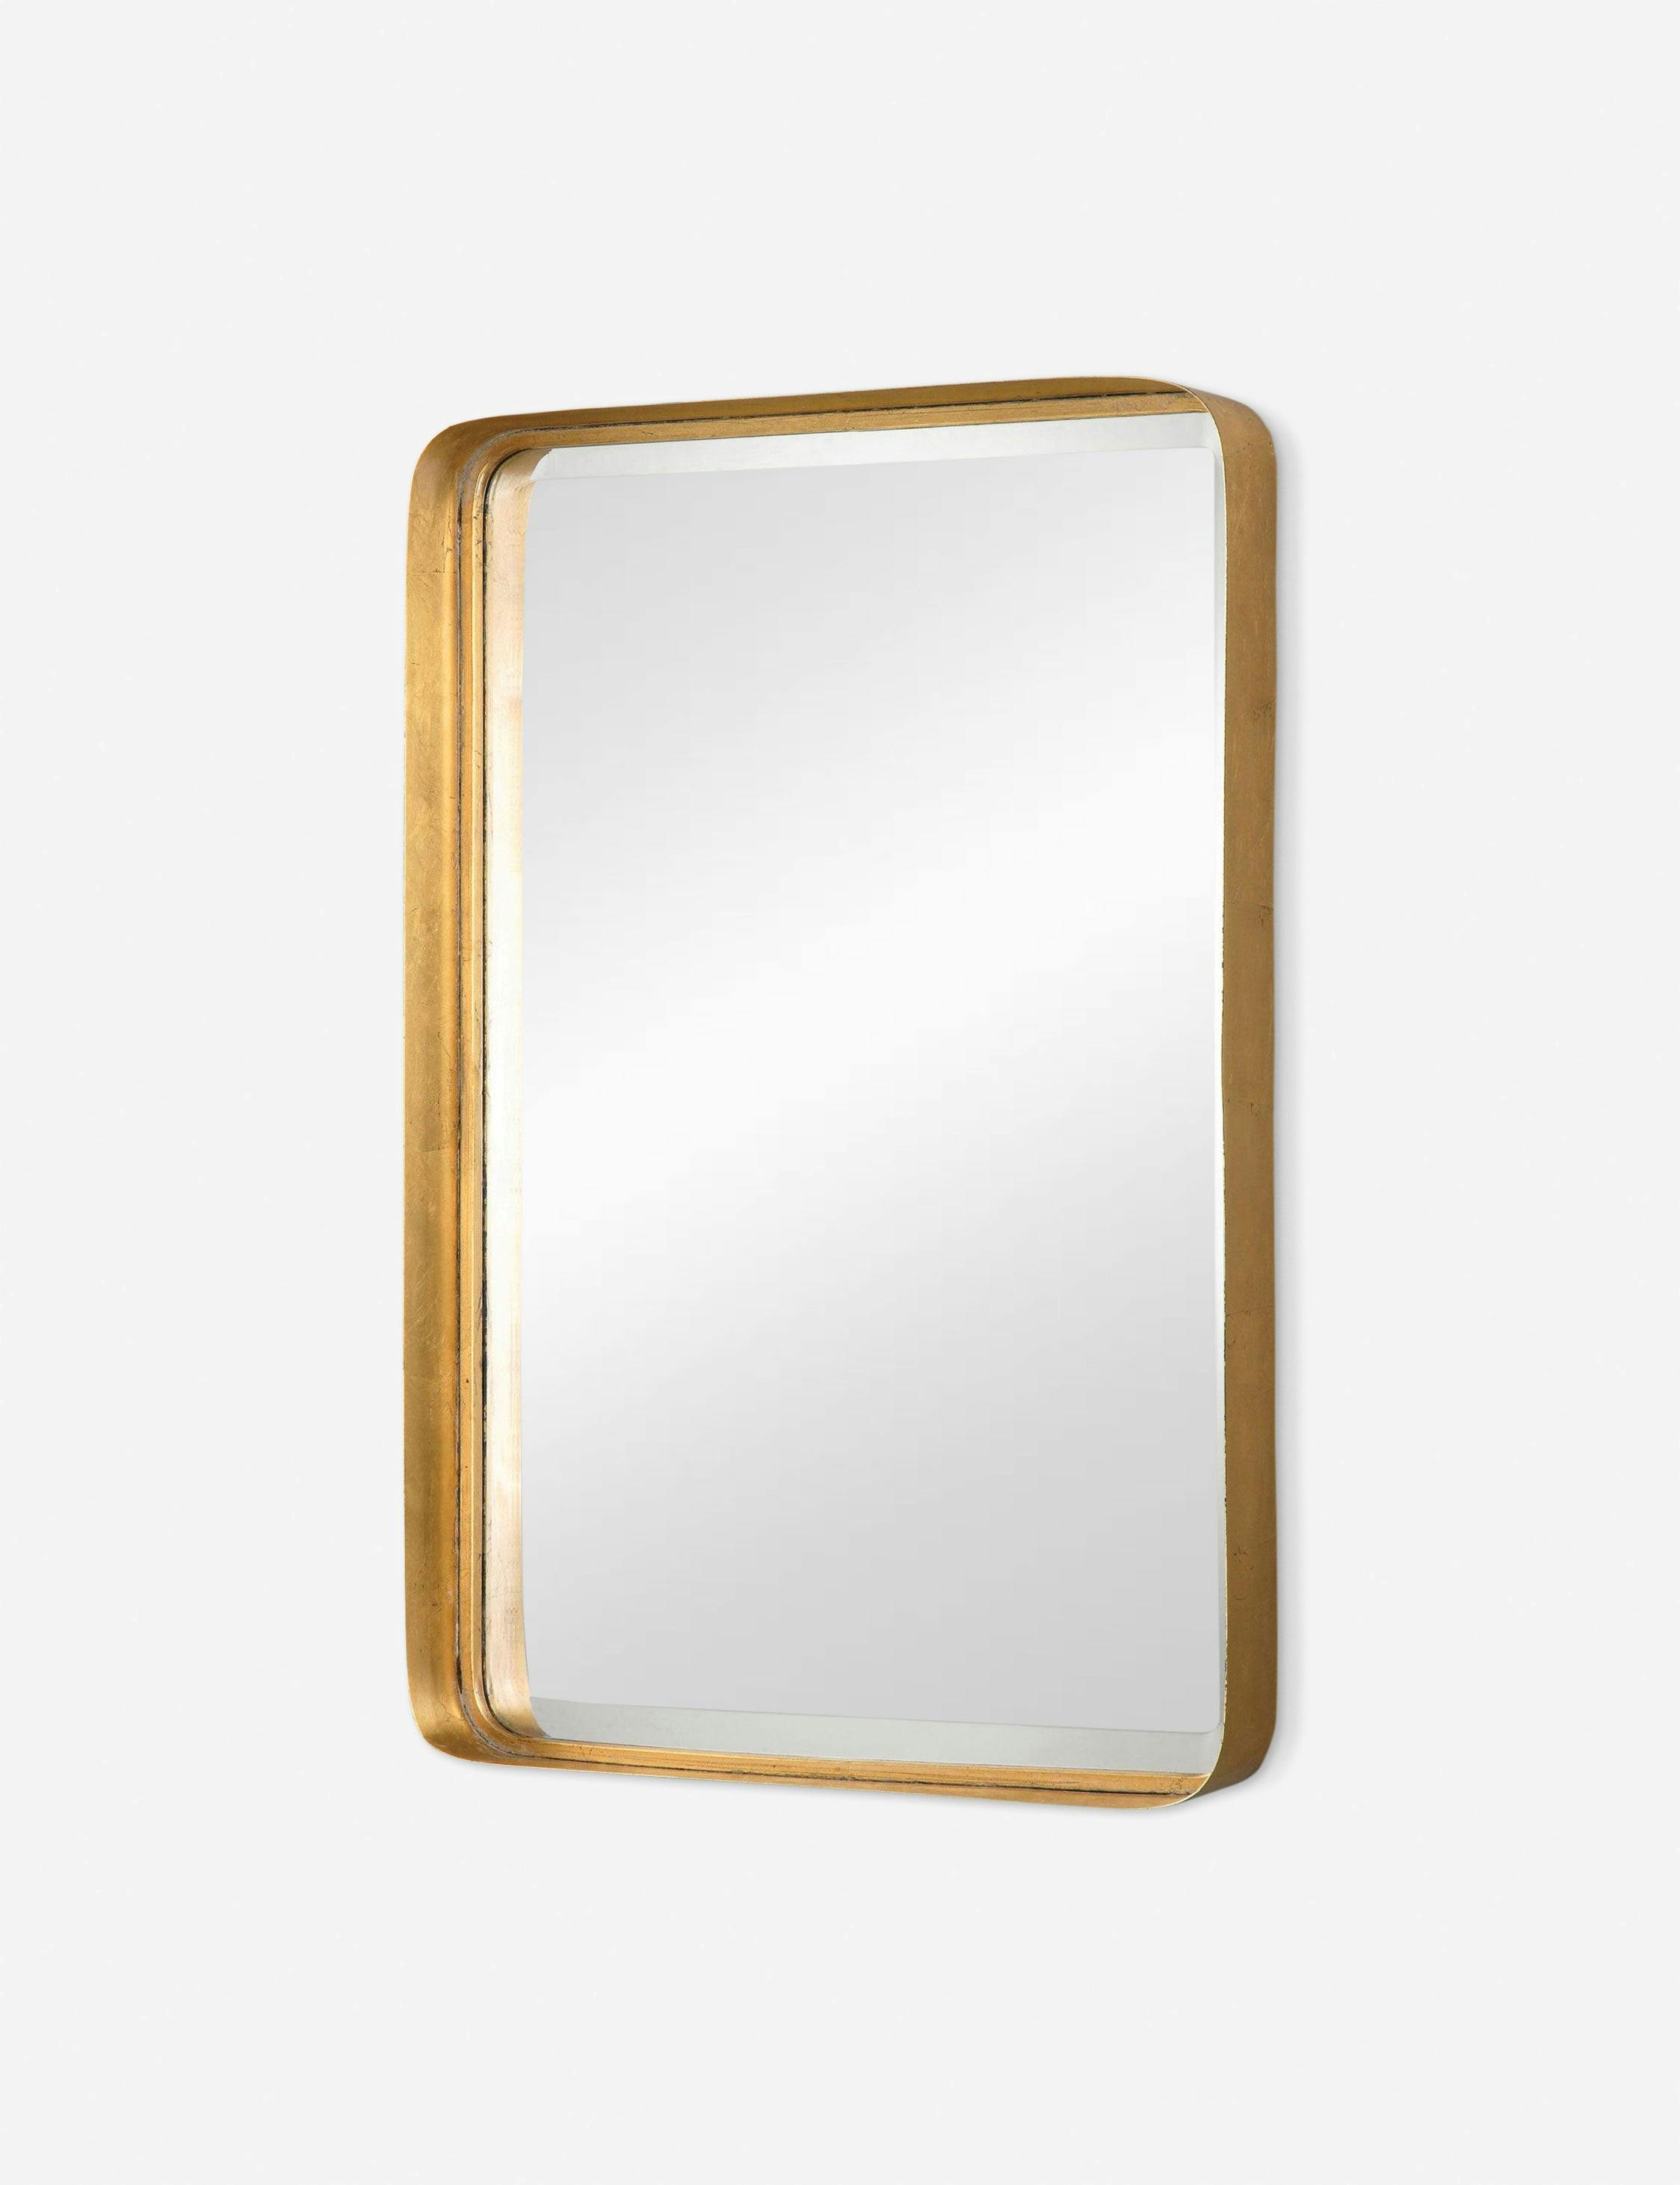 Tayla 20.25"x30.25" Gold Leaf Wall Mirror